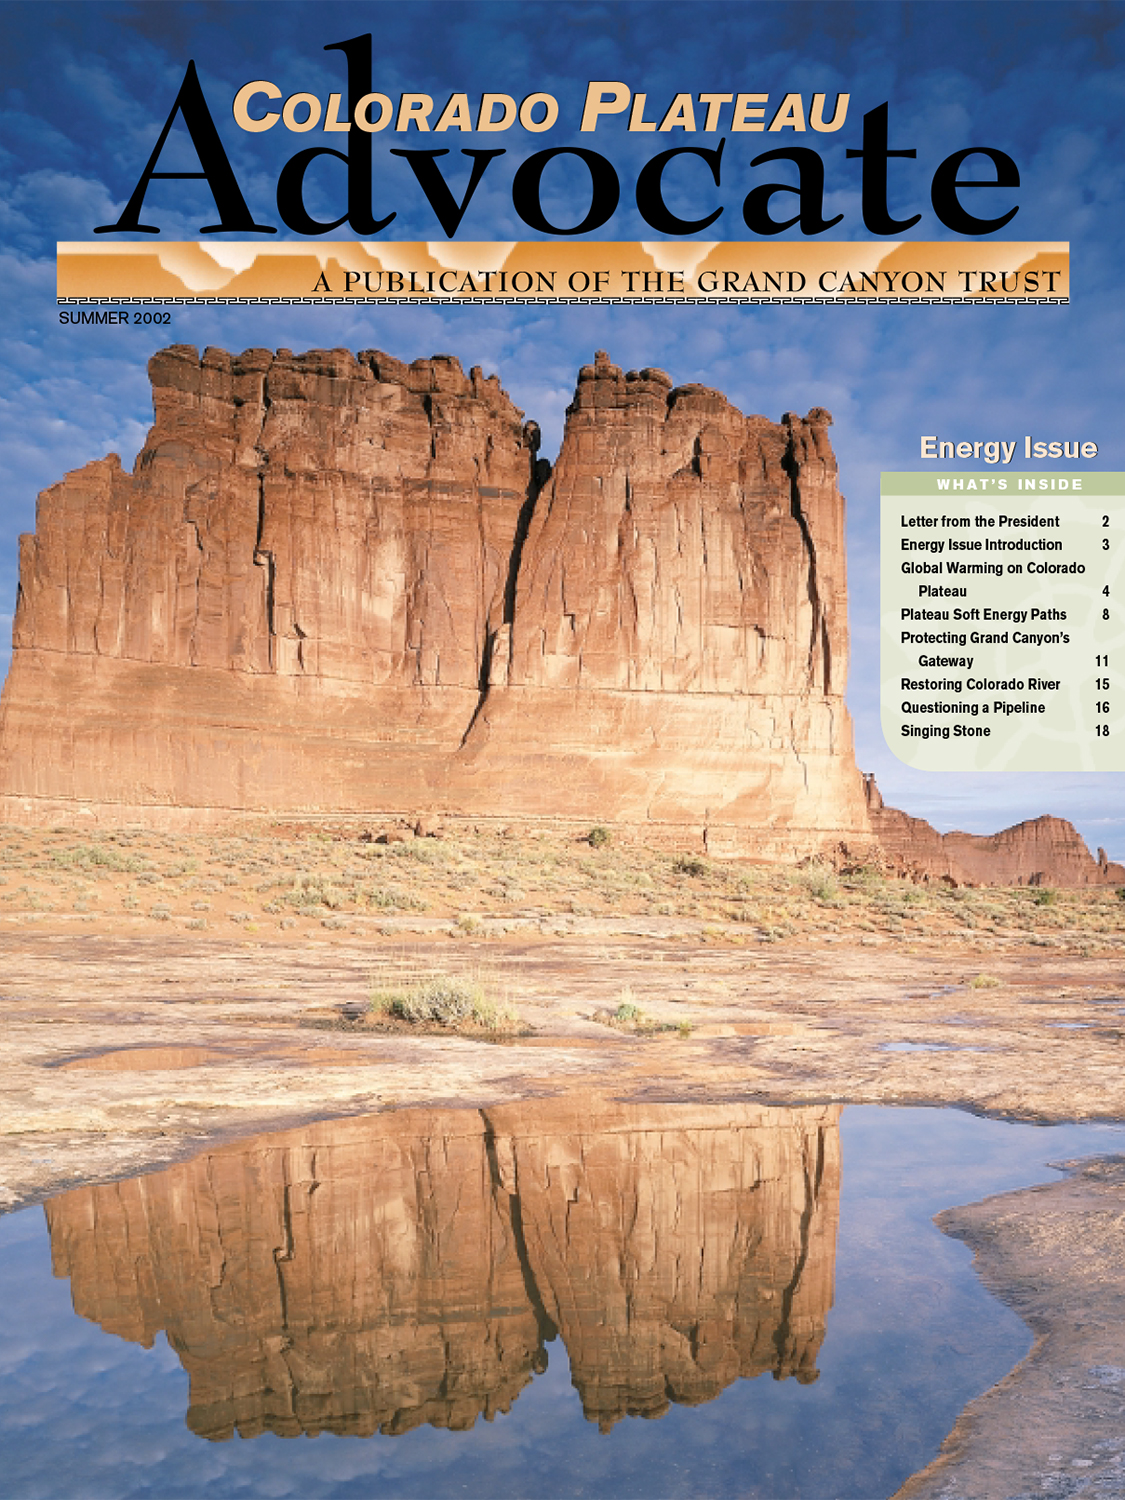 Read the Advocate Magazine